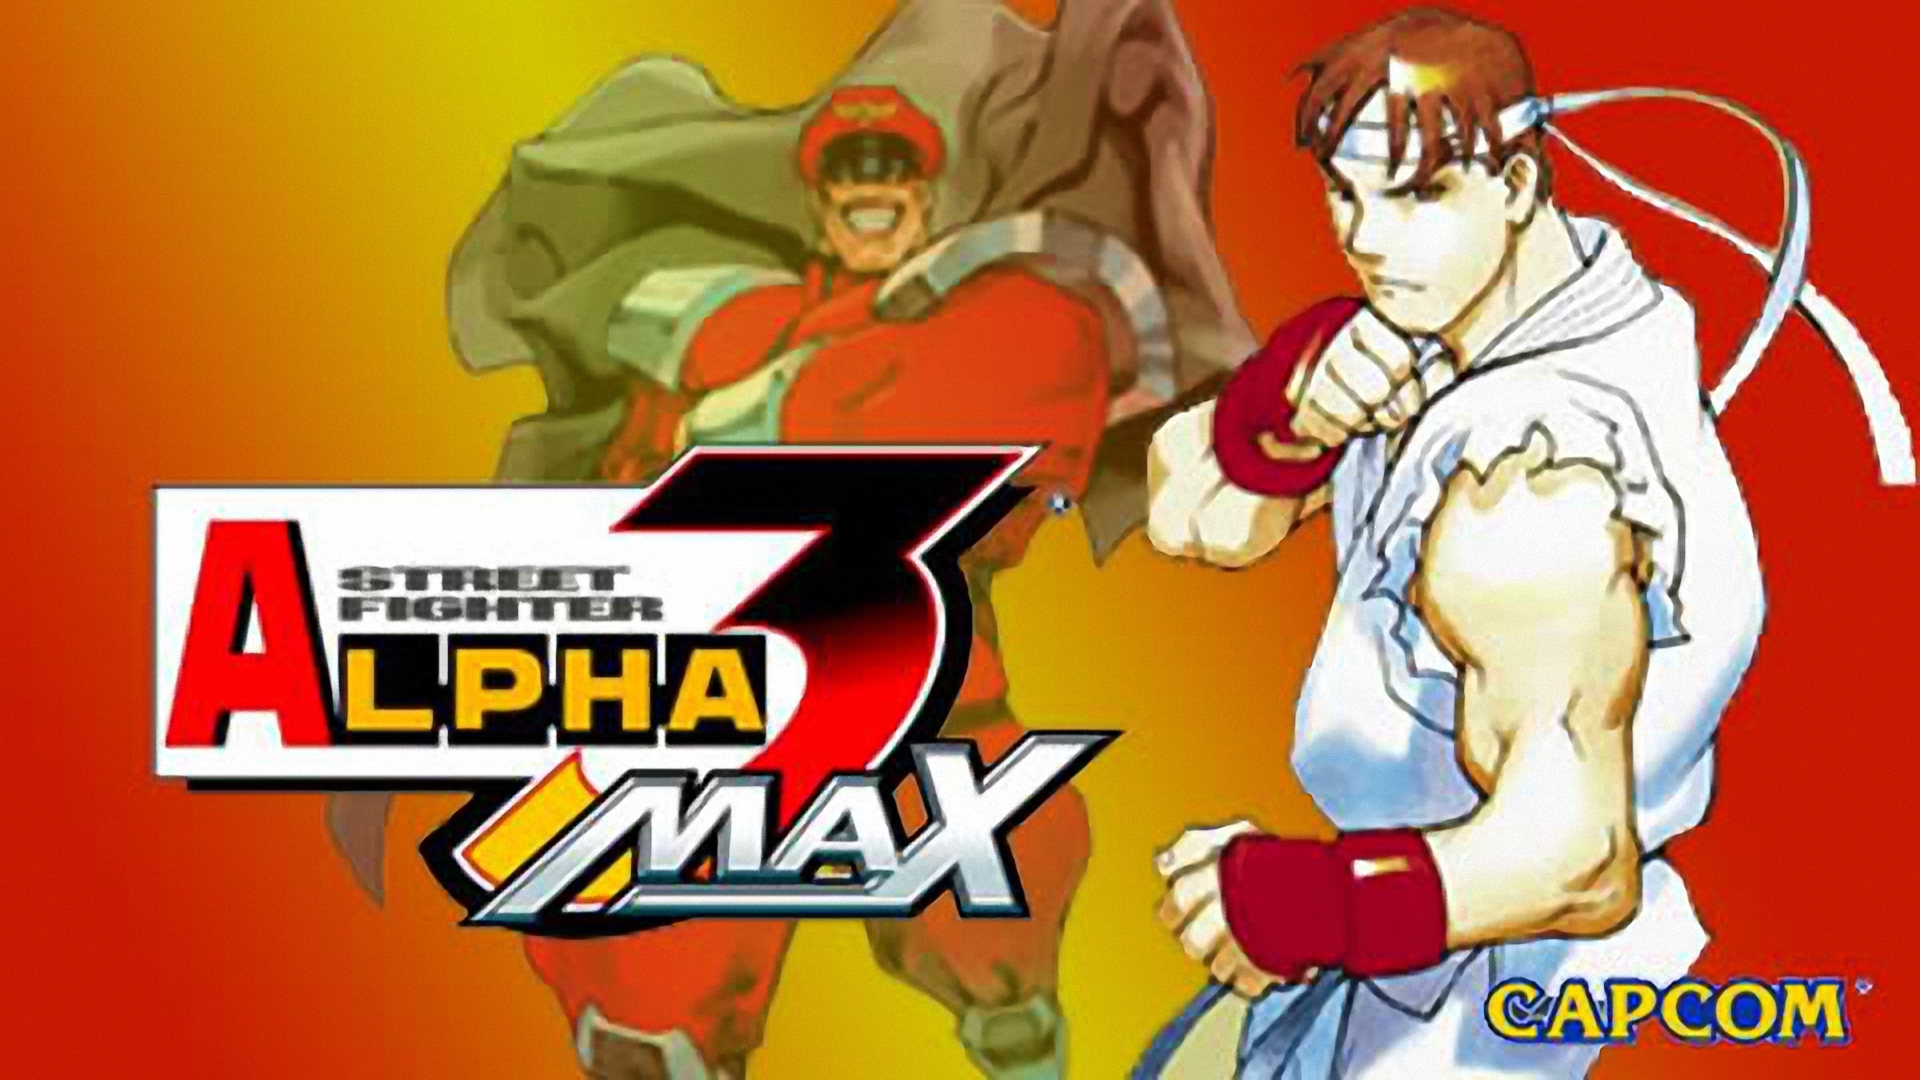 Street Fighter Alpha 3 MAX Concept Art